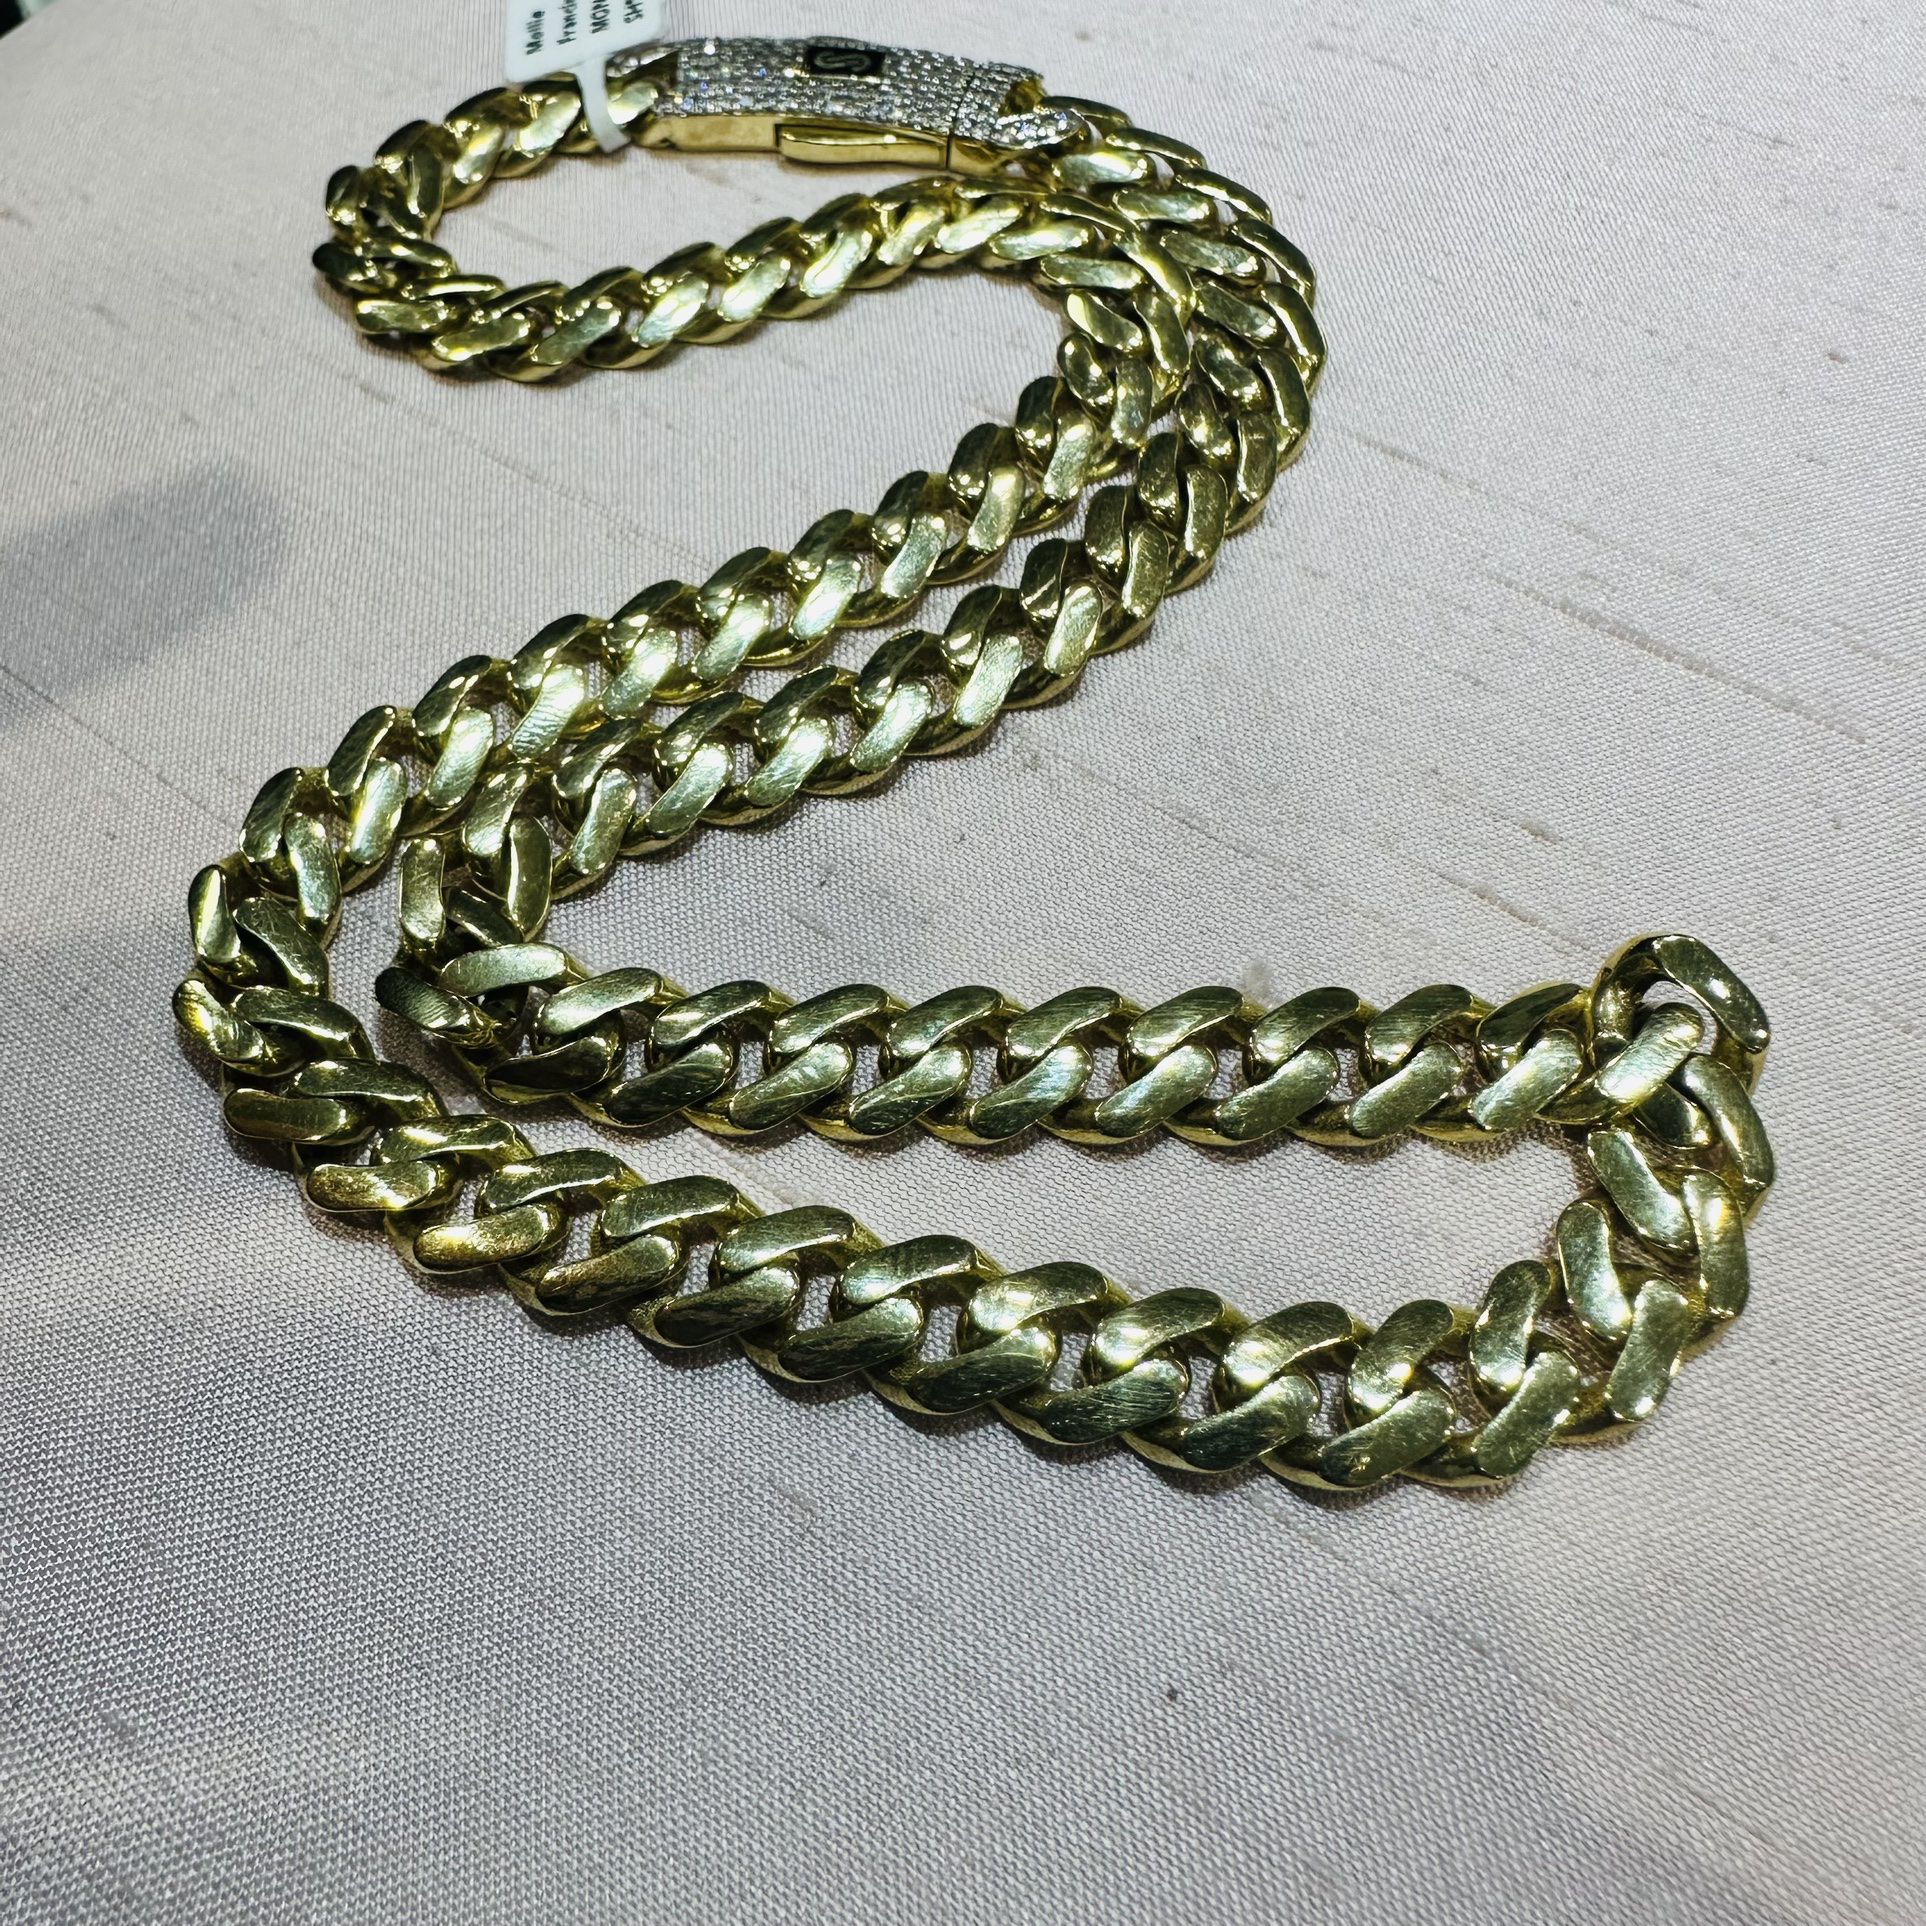 10K 16” Yellow Gold Monoco Chain Necklace 17.g / 10K Oro Amarillo Monaco De 16” 